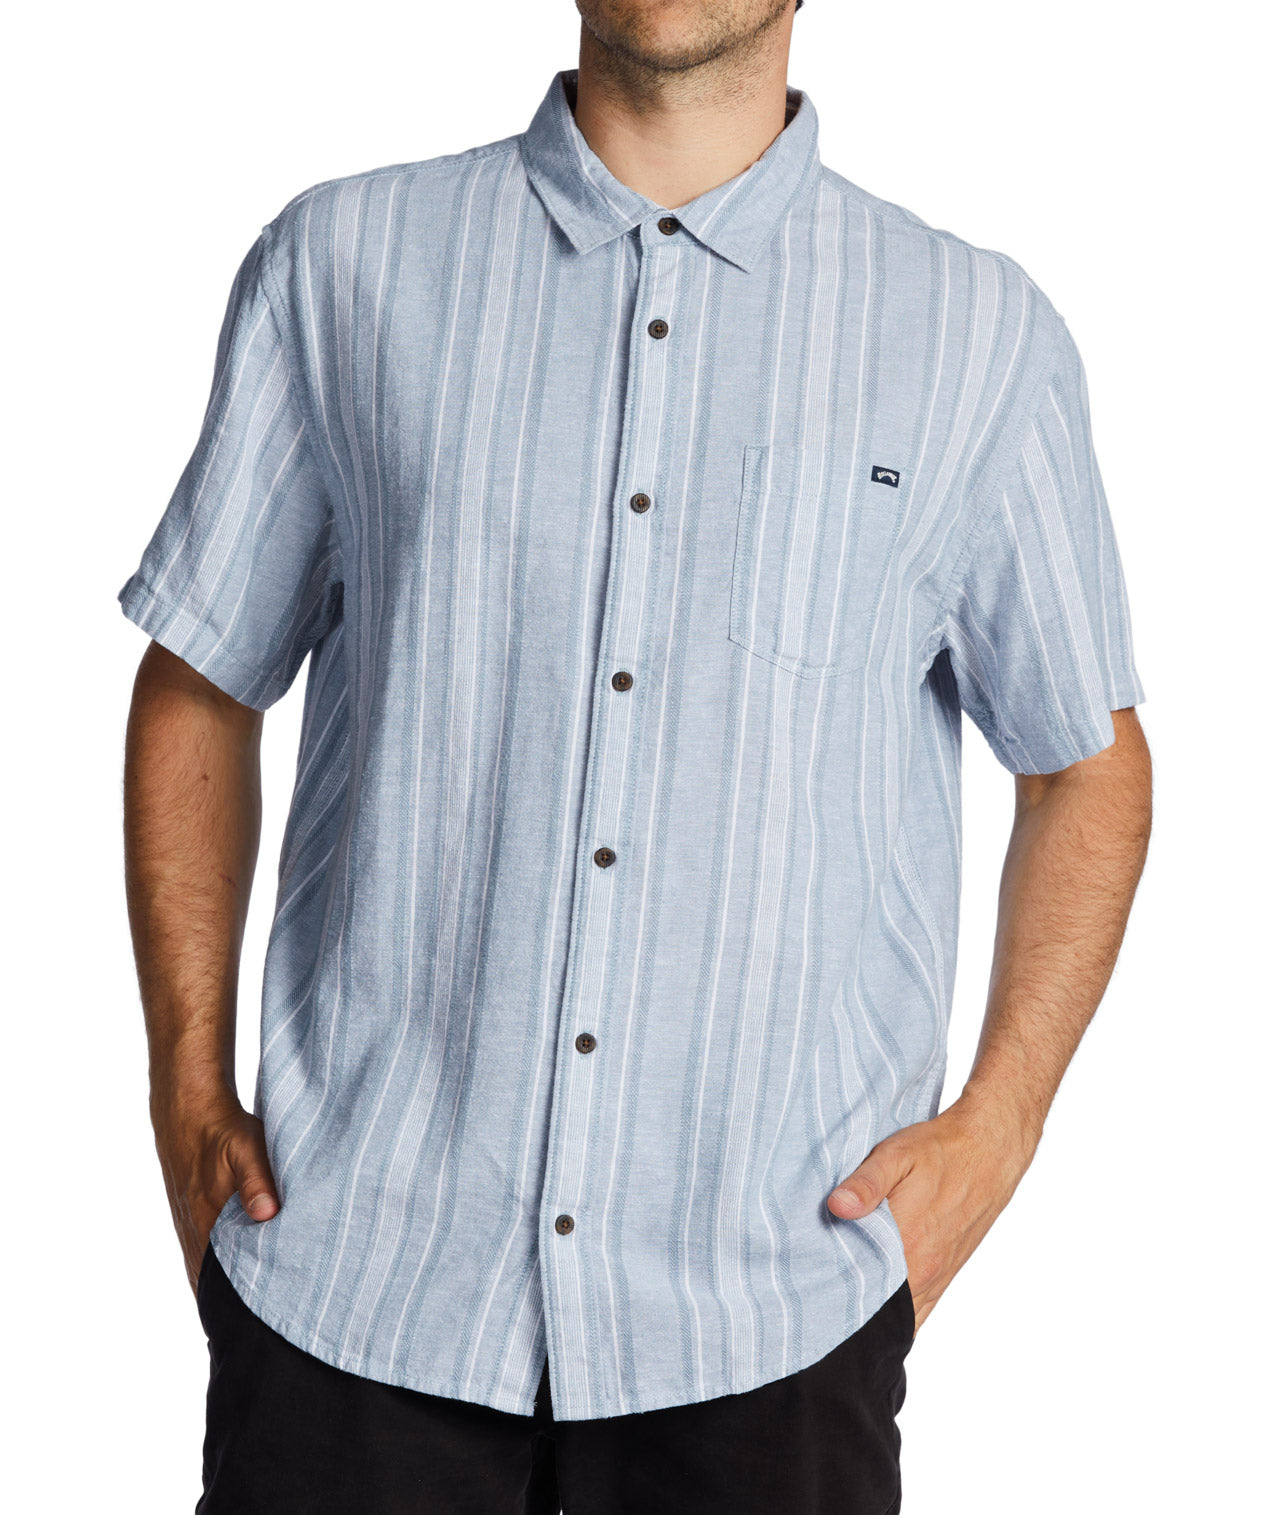 Billabong: Daily Hemp Short Sleeve Shirt